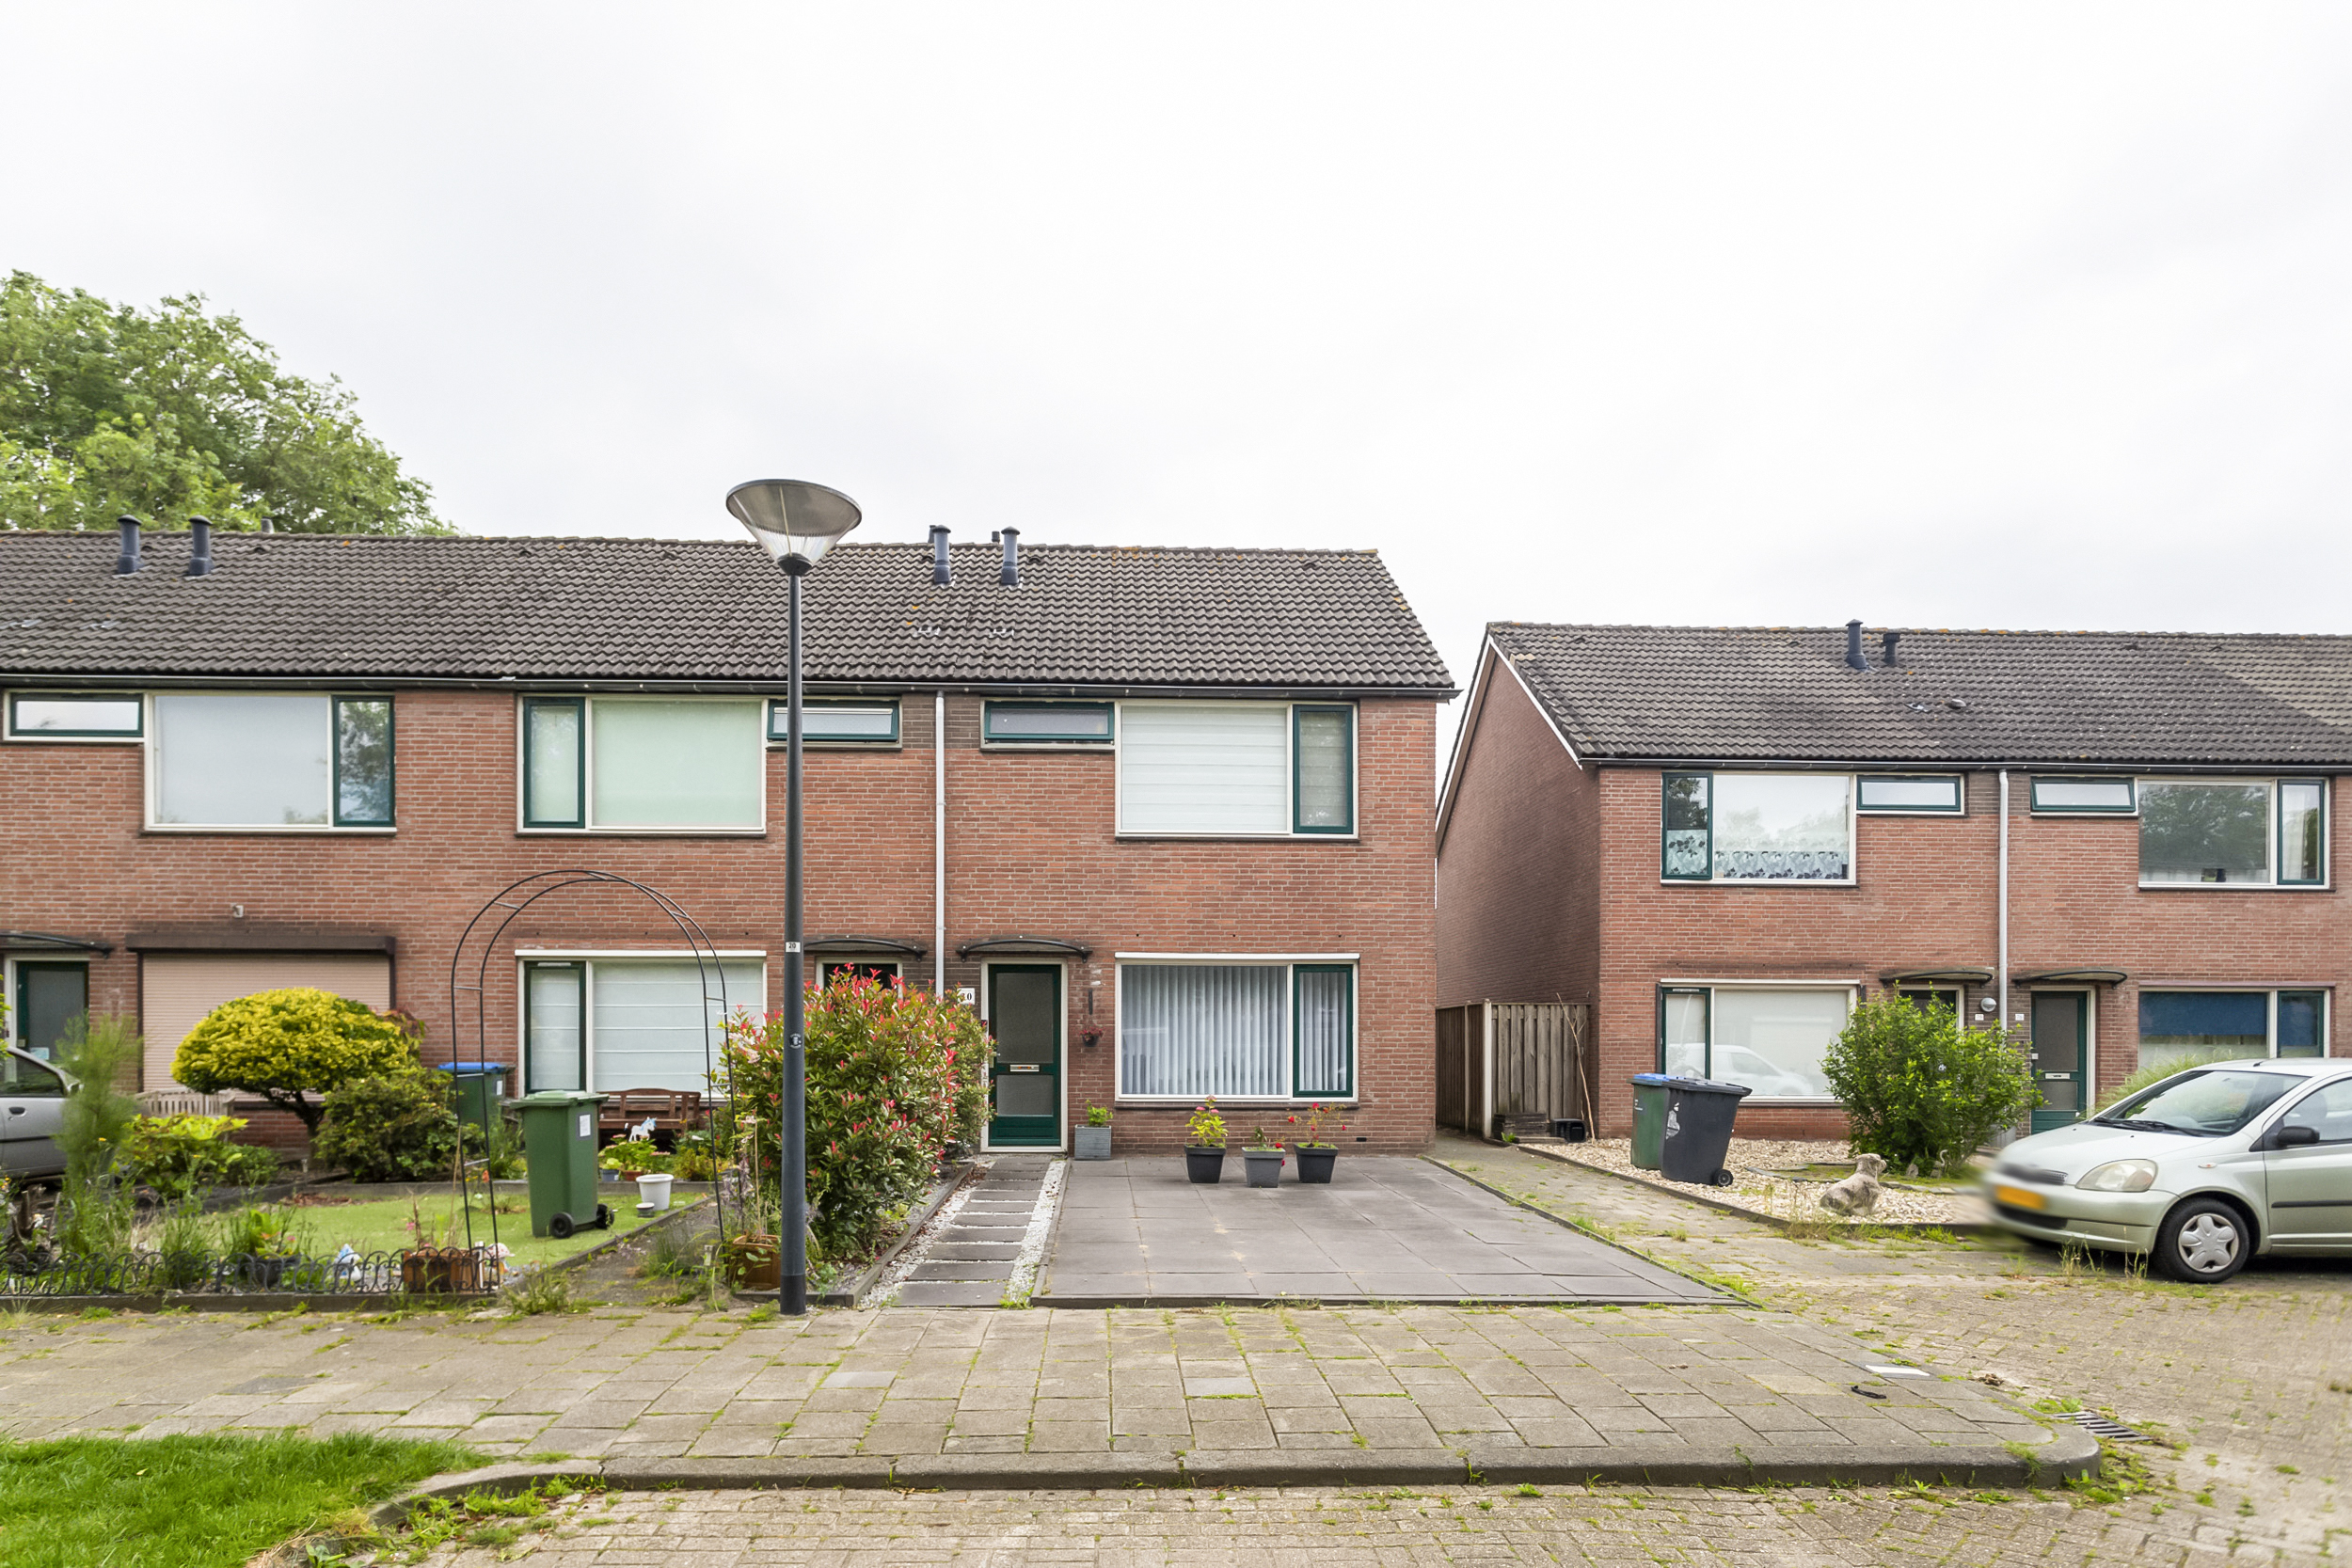 Zuiderkruis 80, 4907 VJ Oosterhout, Nederland